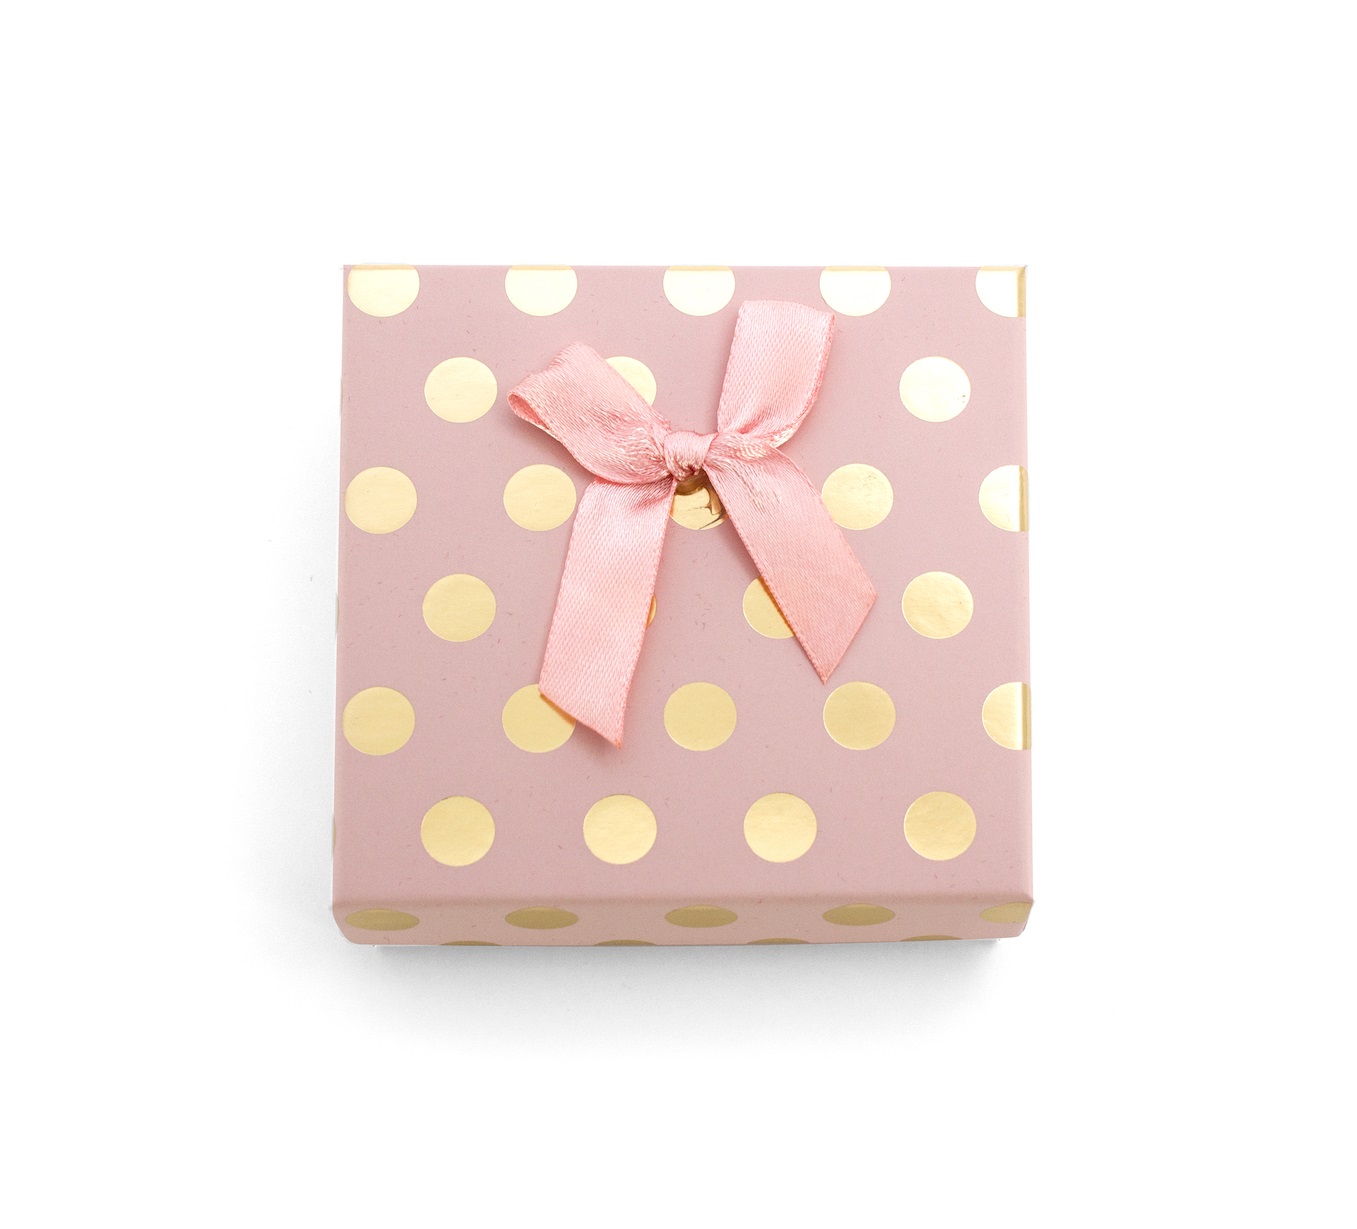 Beneto Ružová darčeková krabička so zlatými bodkami KP7-9